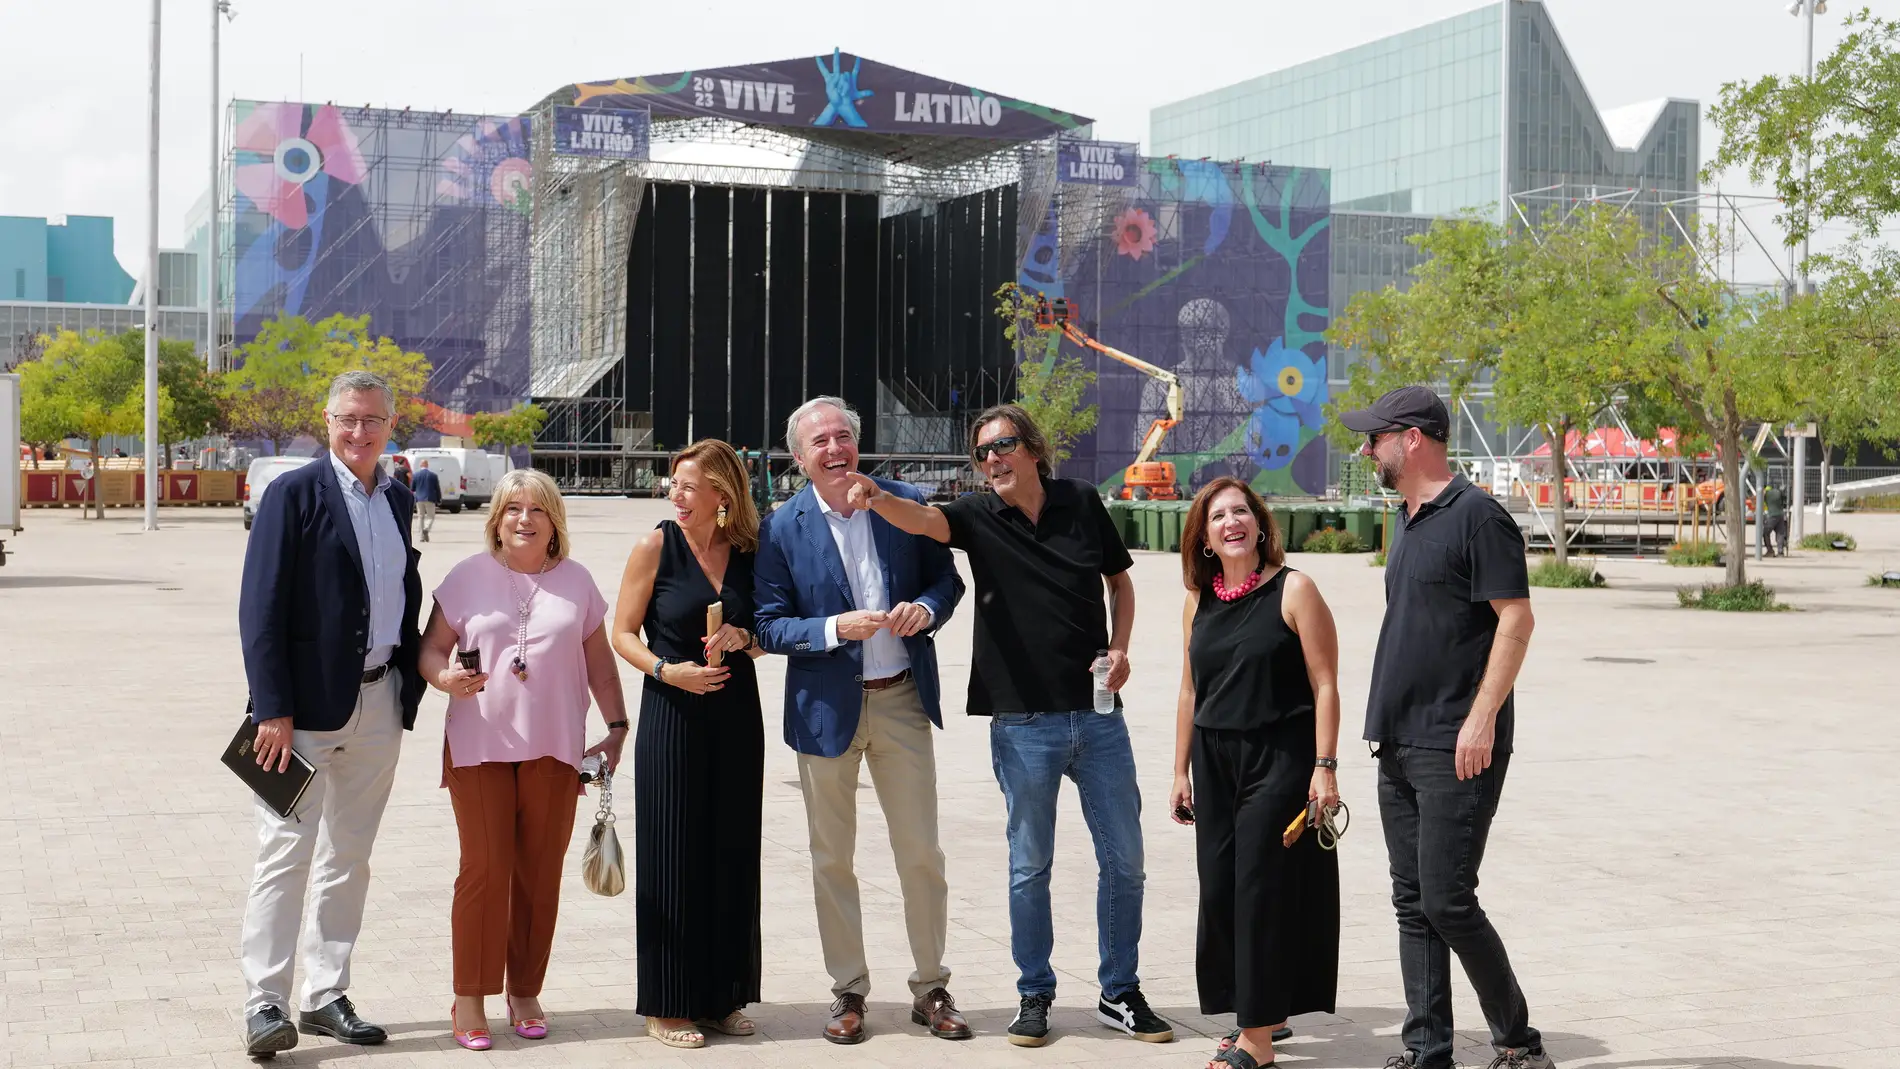 Todo listo para el Vive Latino en el recinto de la Expo de Zaragoza